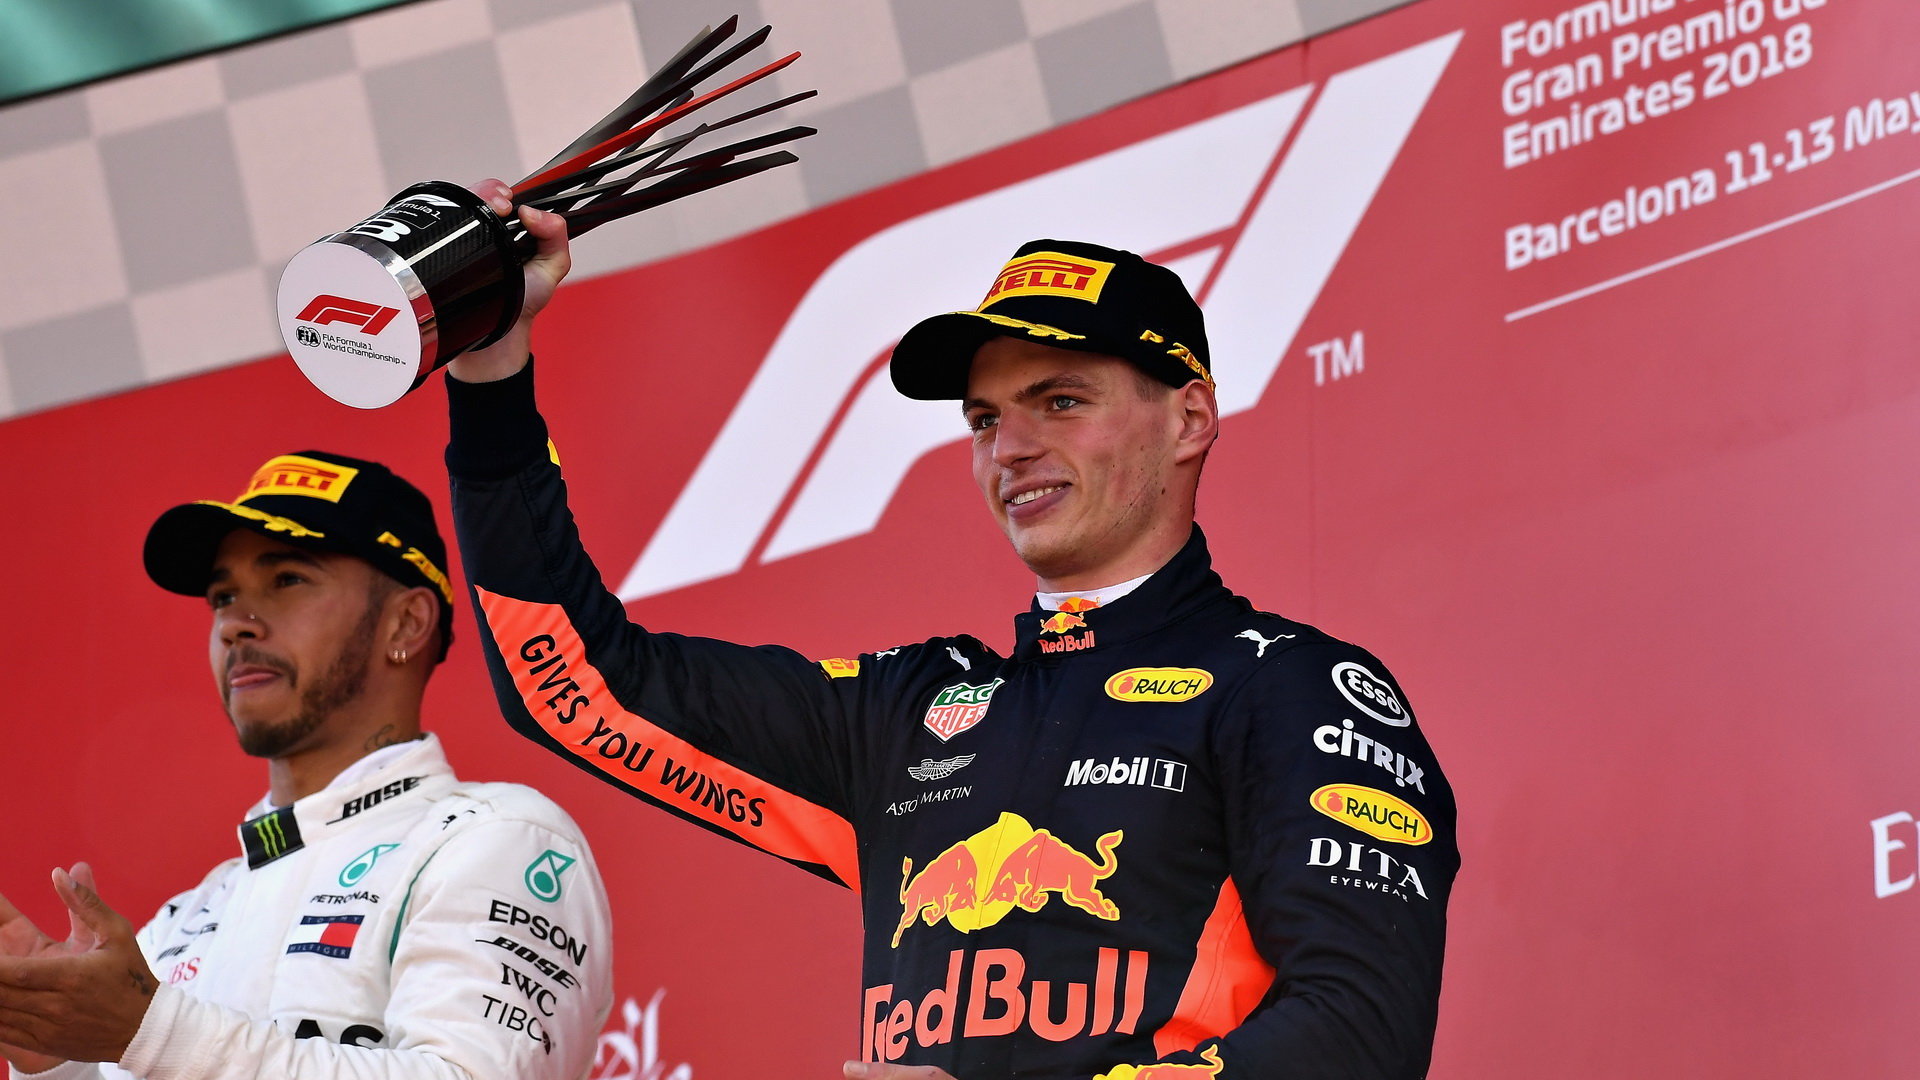 Max Verstappen se svou trofejí na pódiu po závodě ve Španělsku